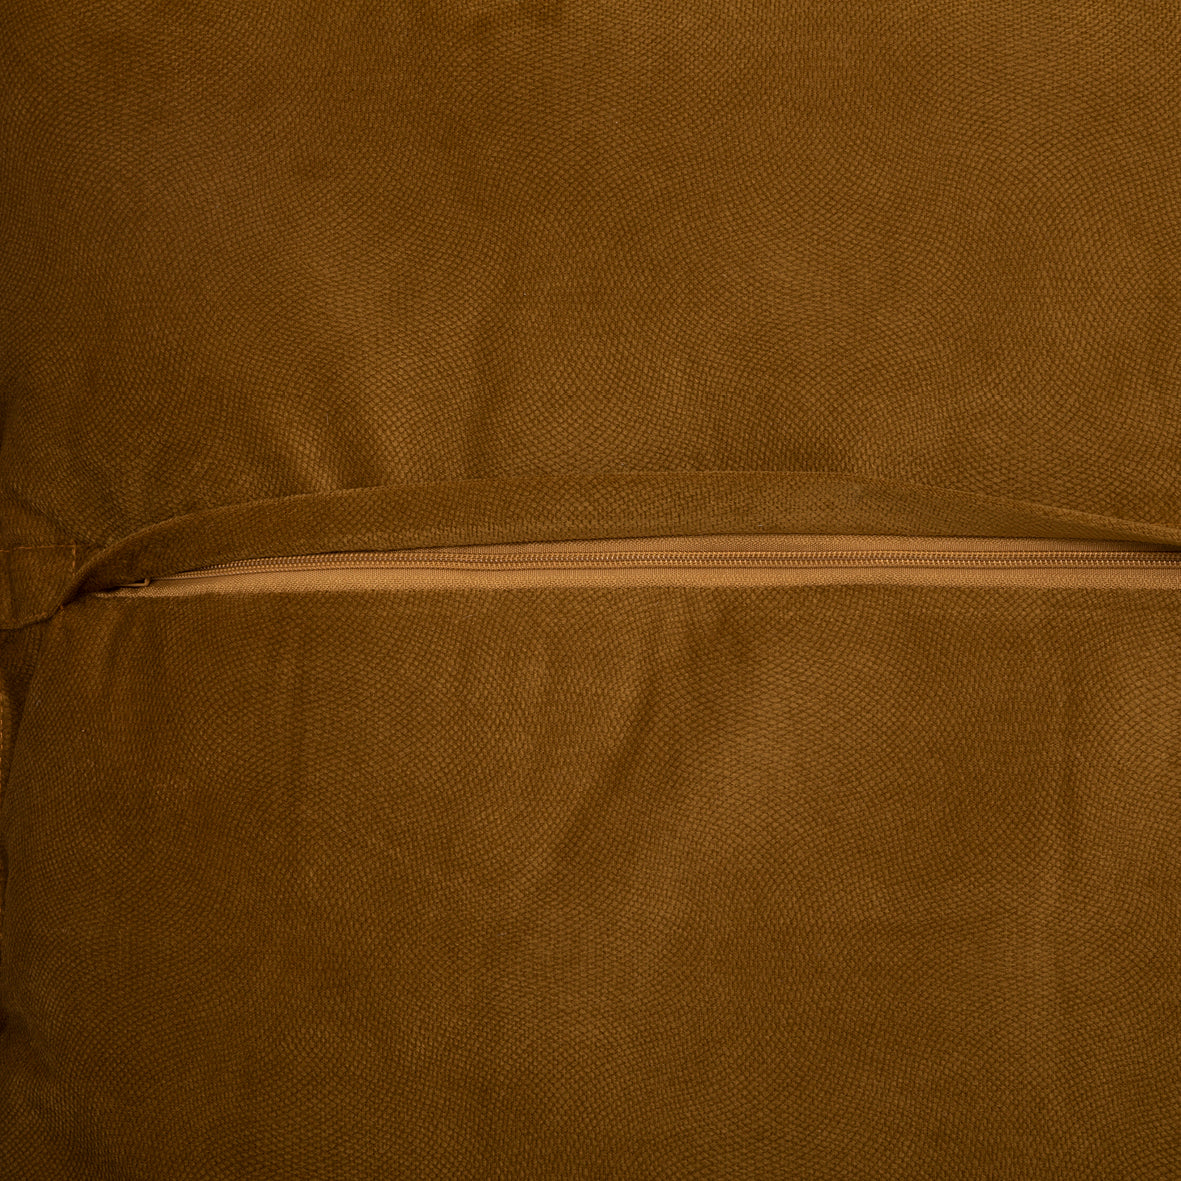 Cushion Gold brown 55 x 7 x 55 cm